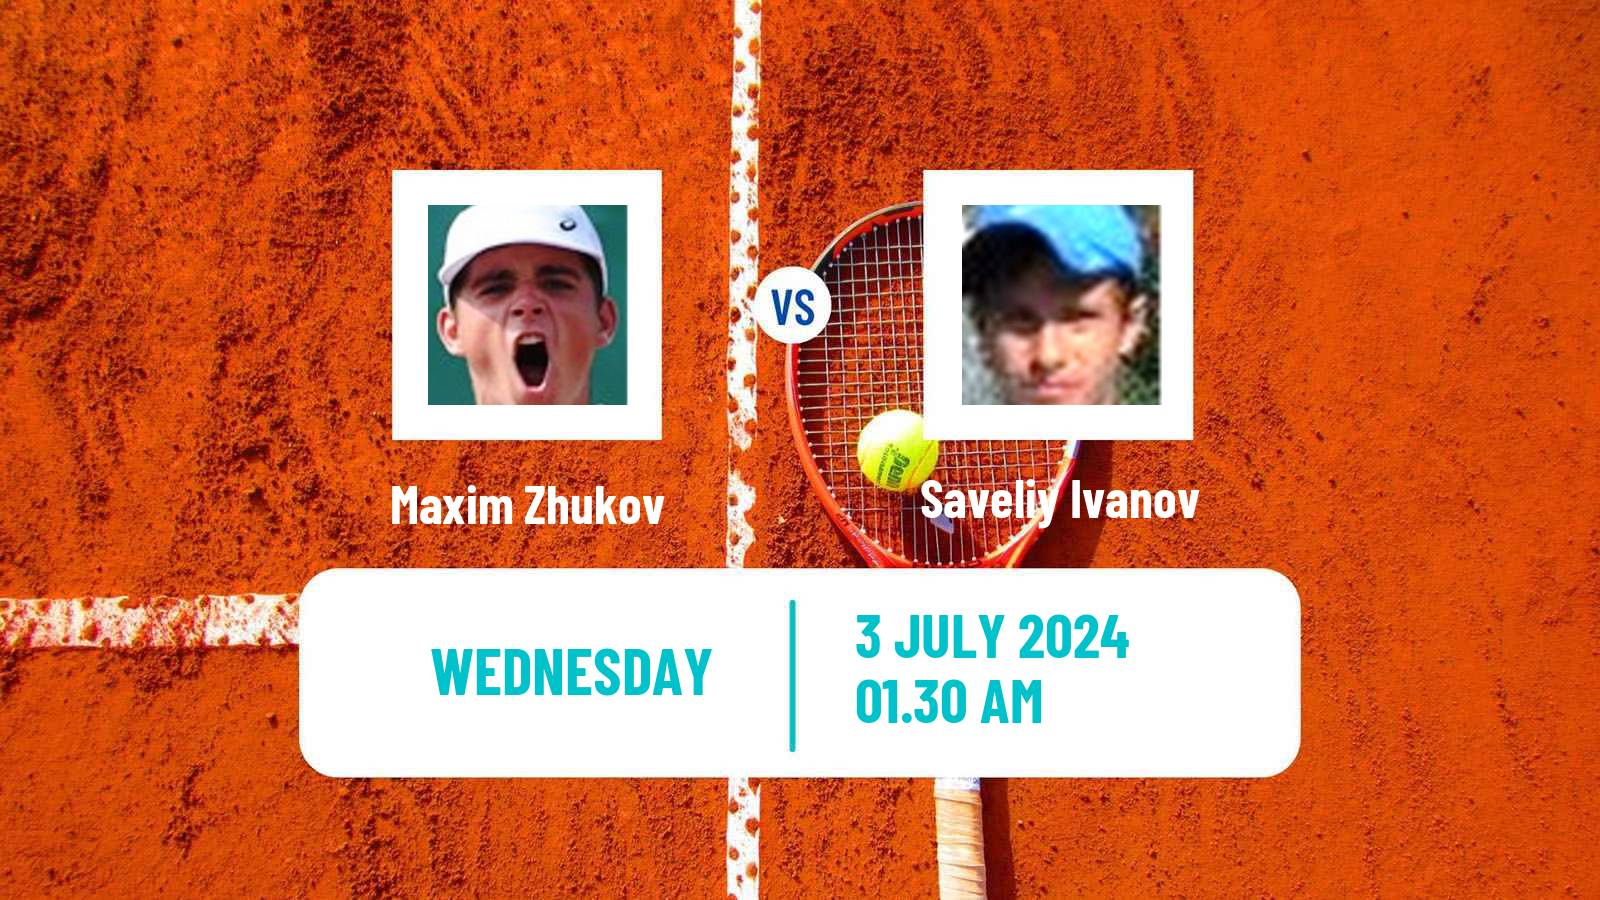 Tennis ITF M15 Ust Kamenogorsk 2 Men 2024 Maxim Zhukov - Saveliy Ivanov